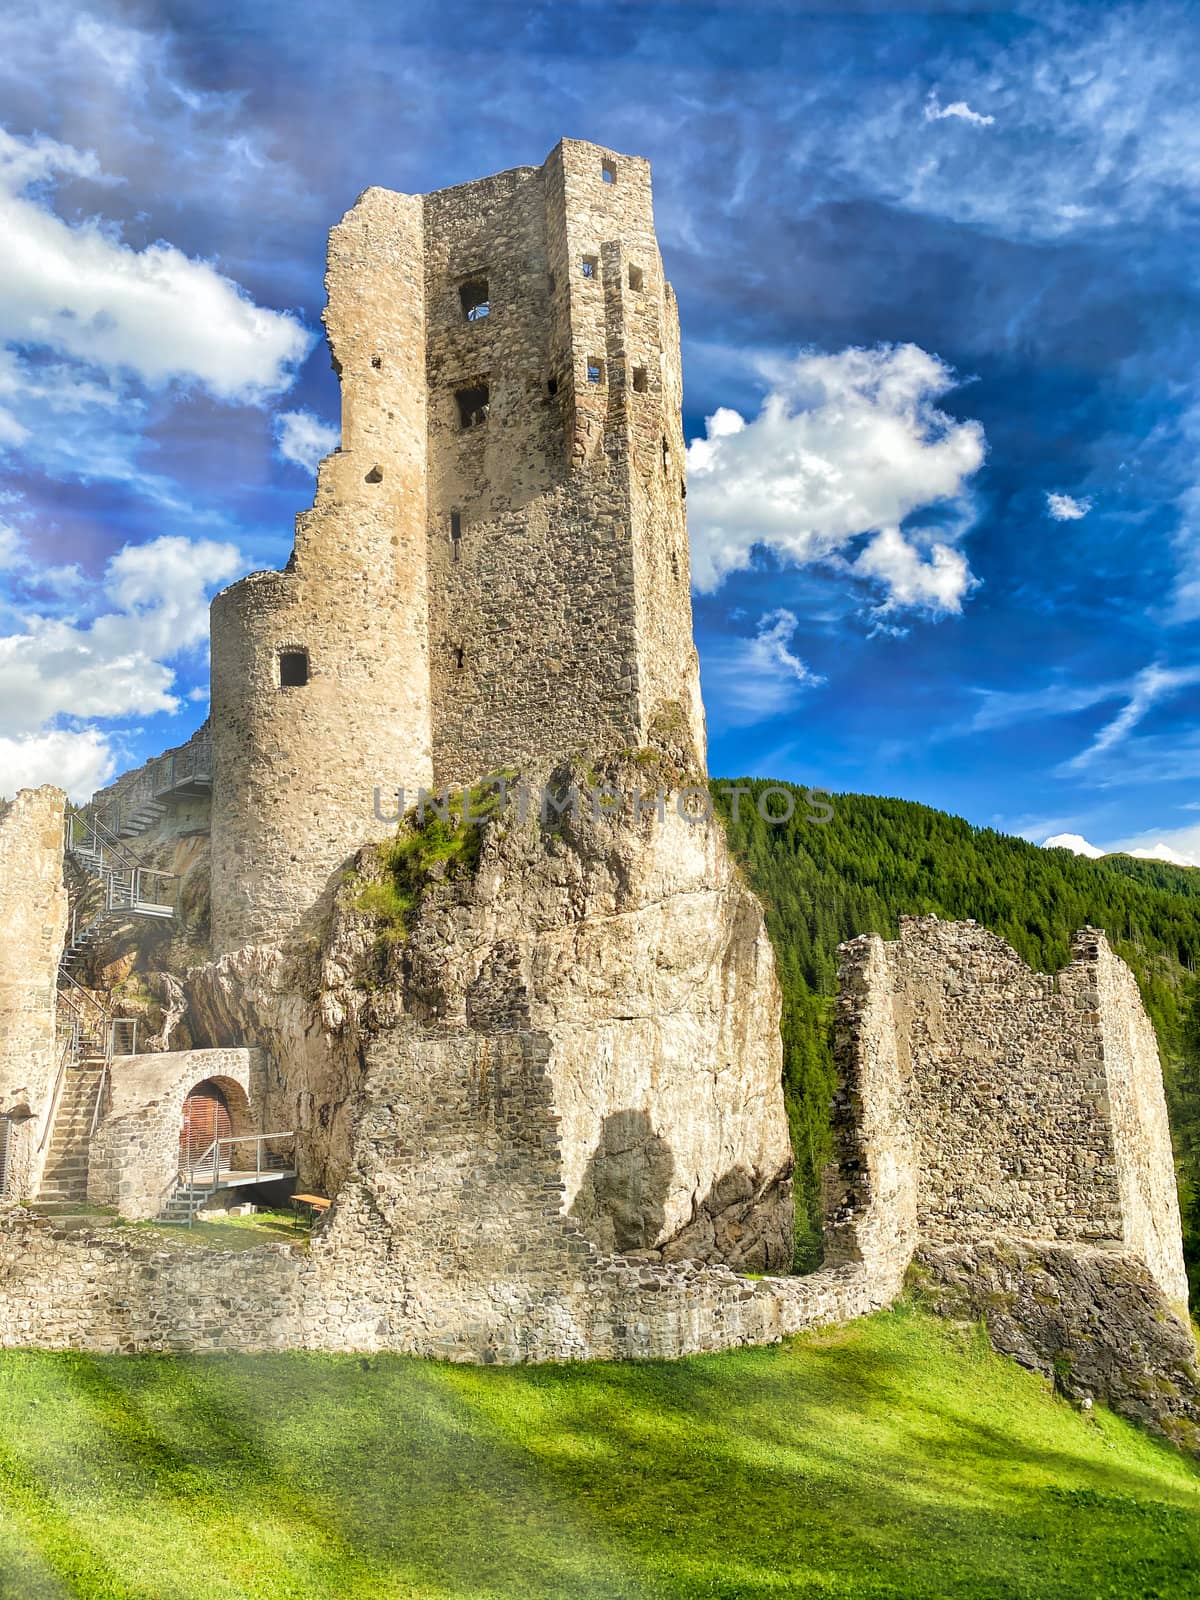 Beautiful Andraz Castle on Italian Alps. Summer season.